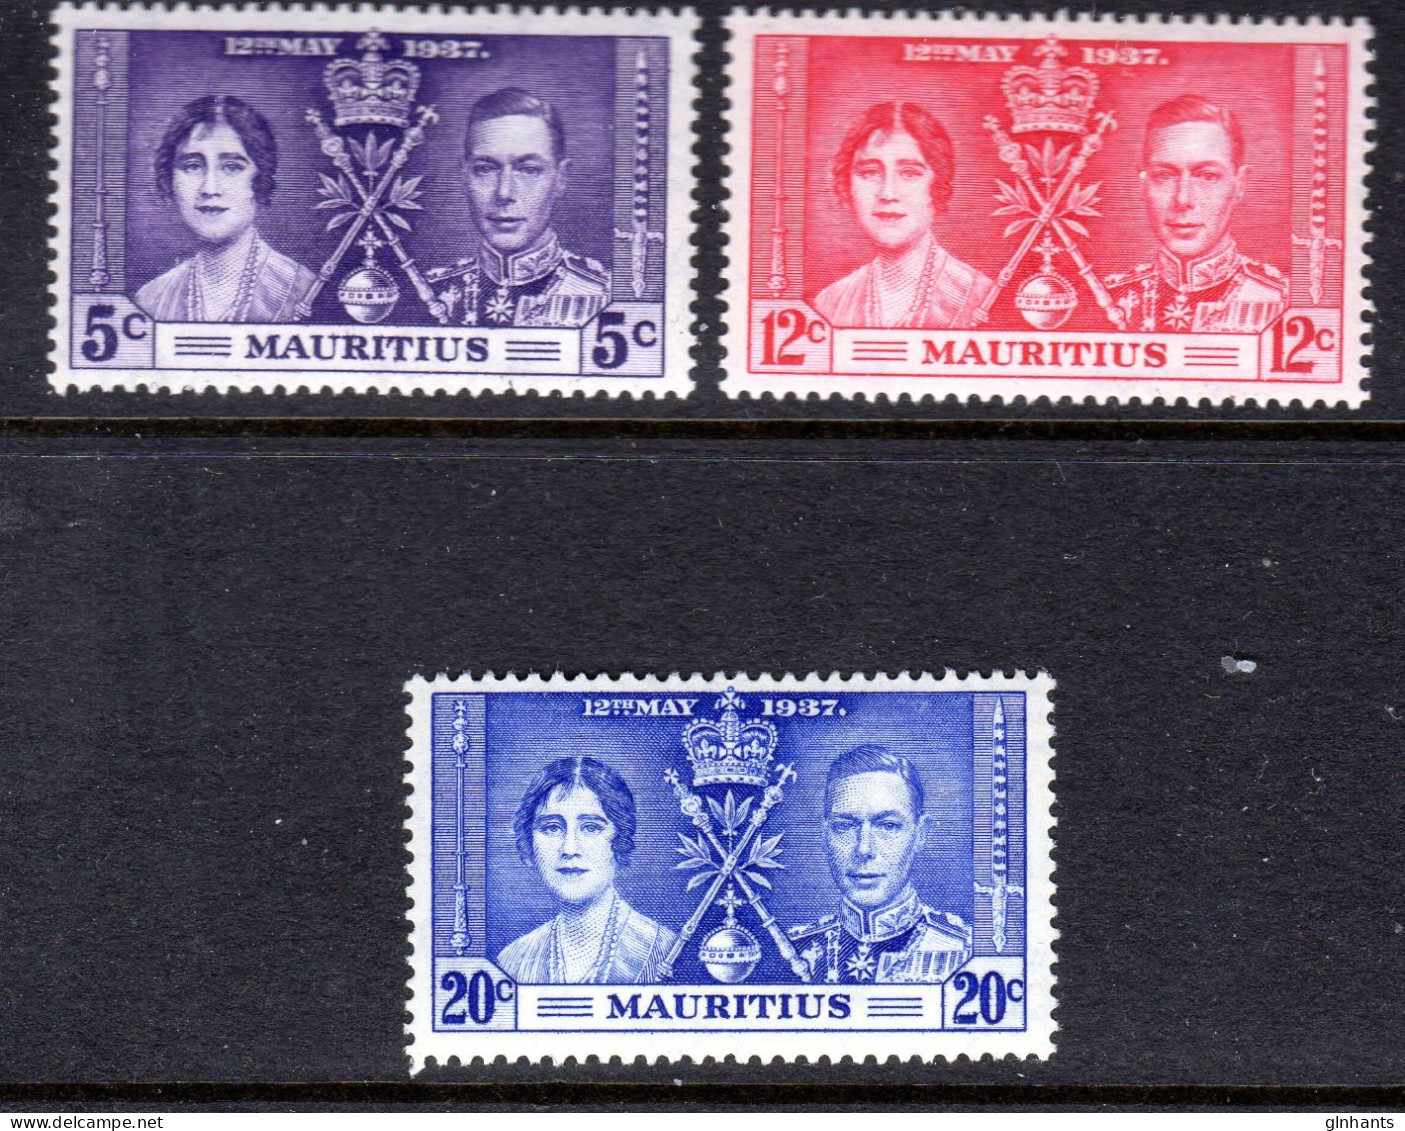 MAURITIUS - 1937 CORONATION SET (3V) LIGHTLY MOUNTED MINT LMM * SG 249-251 - Mauritius (...-1967)